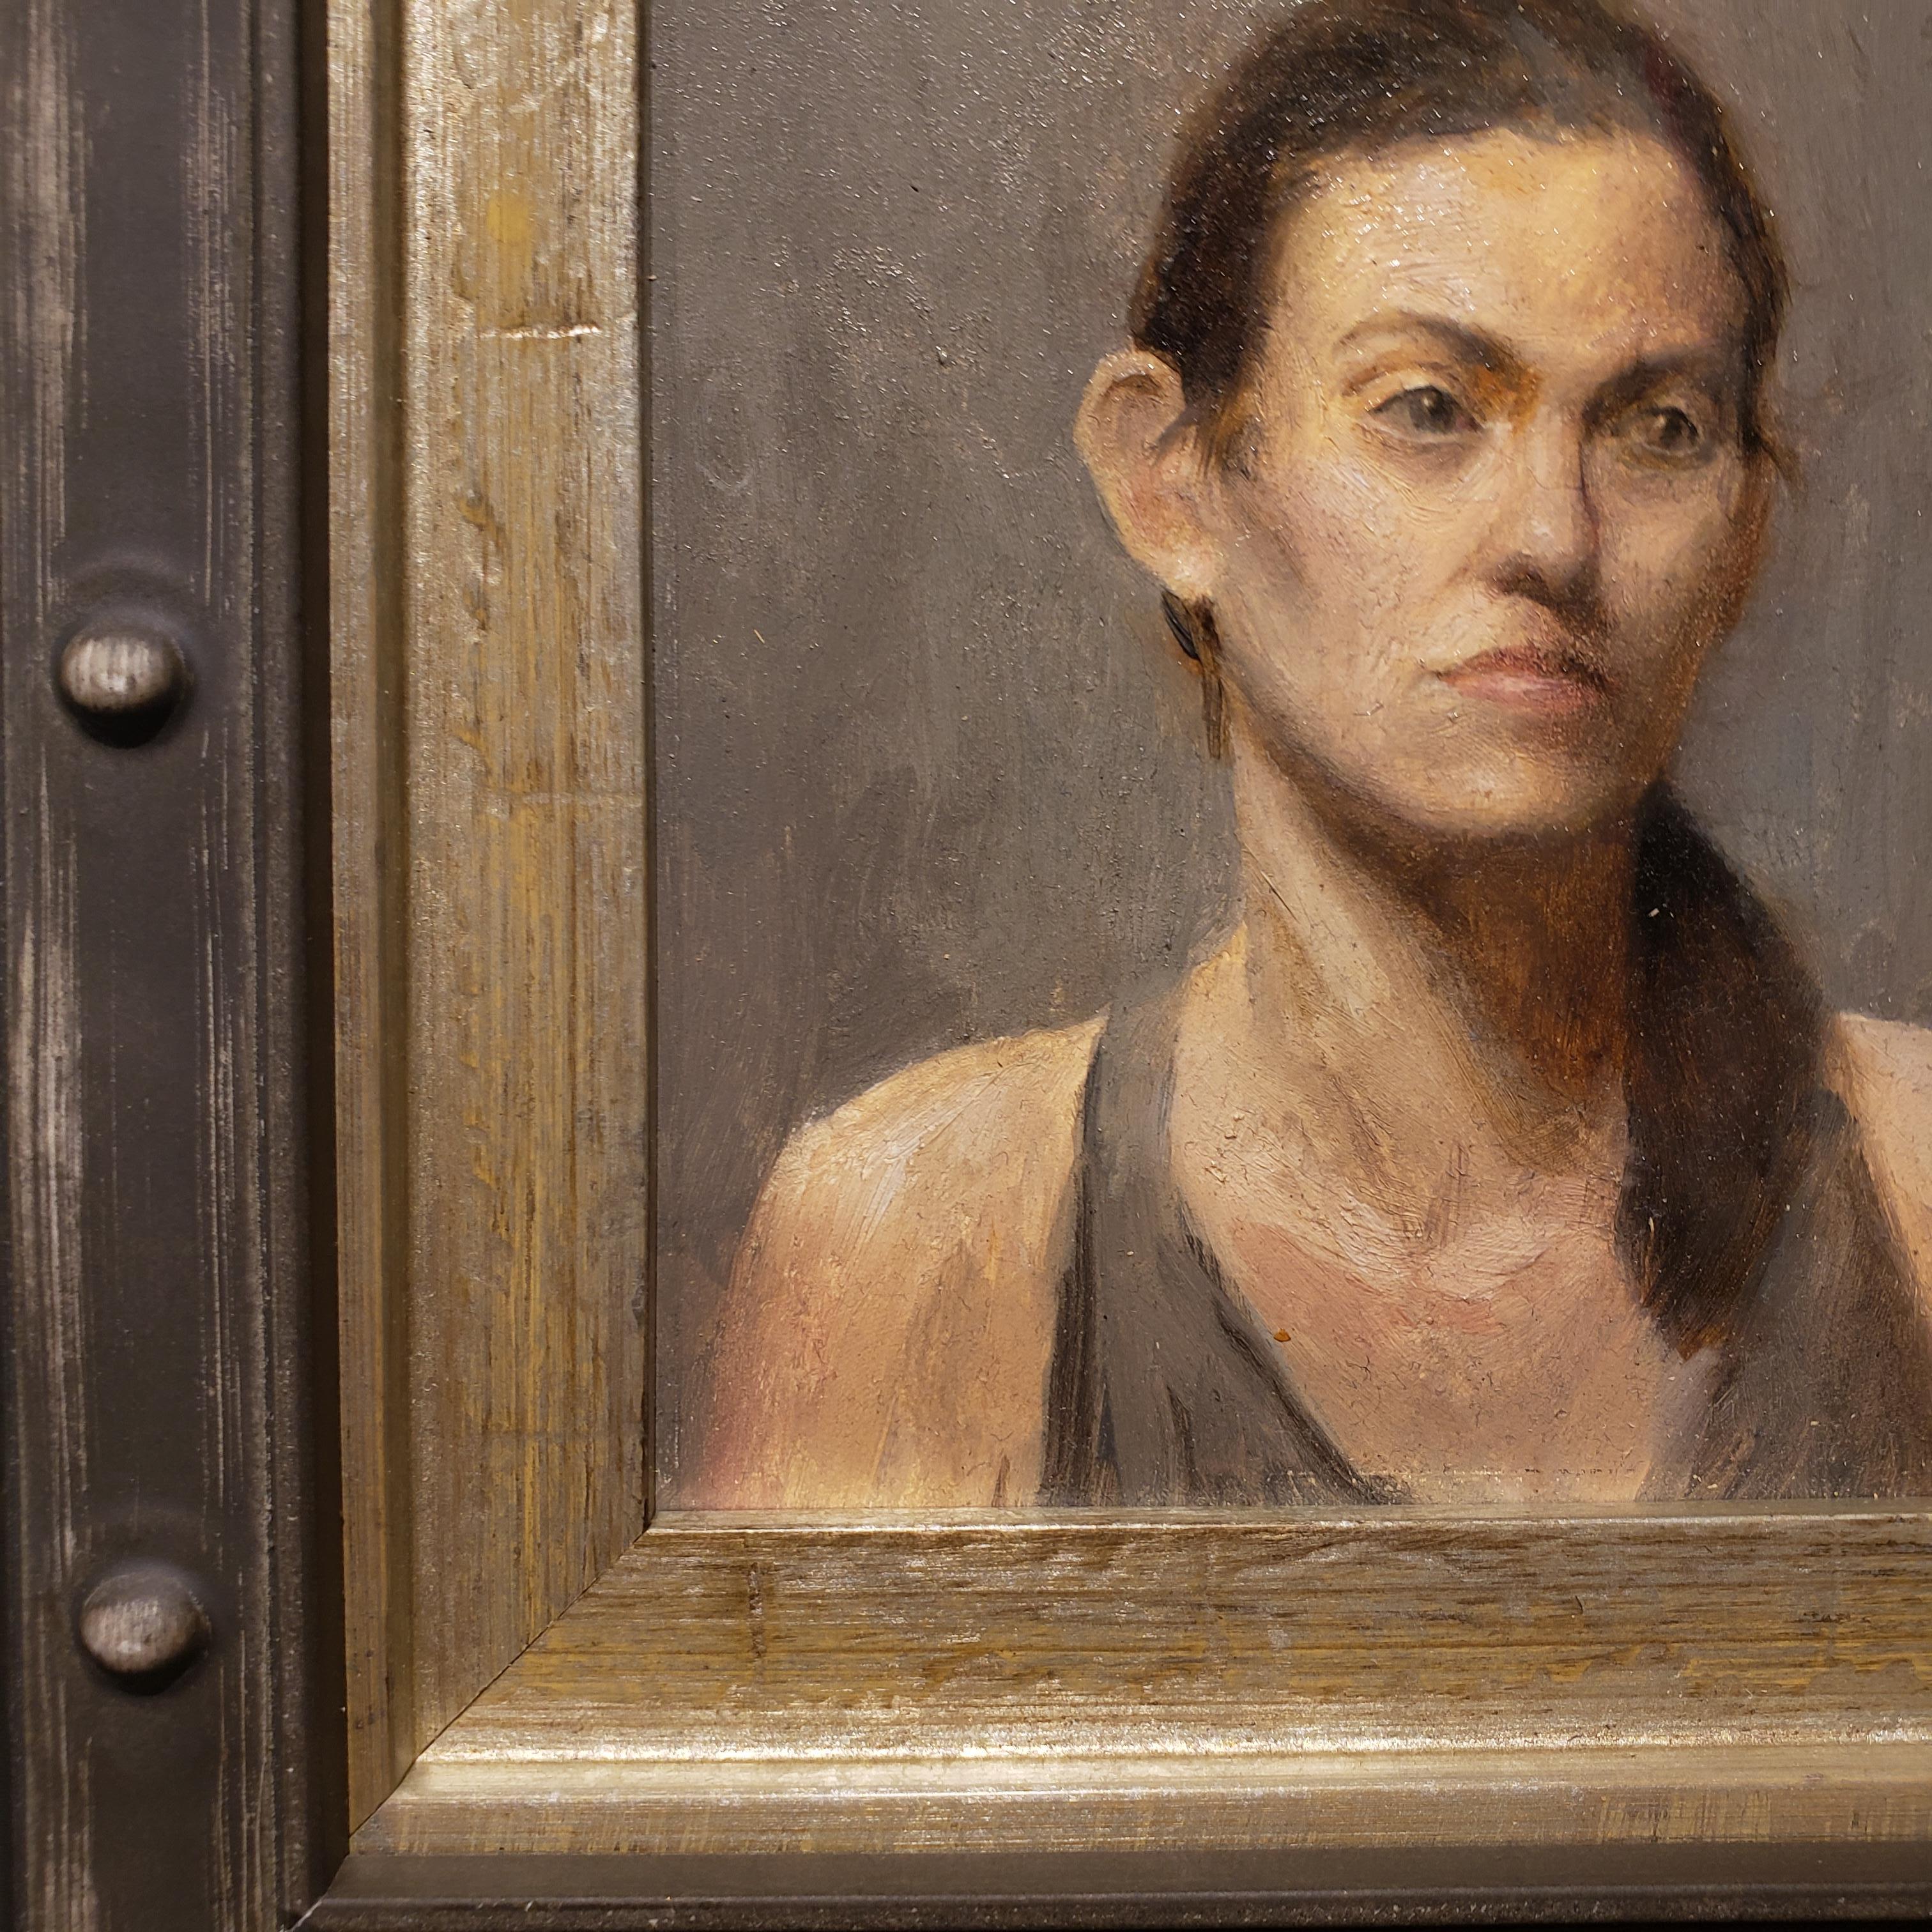 Rachel est un portrait réalisé par Lucas Bononi, qui est né en Amérique du Sud et s'est installé aux États-Unis pour étudier l'art.  Il est diplômé du Grand Central Atelier de New York et est un artiste à plein temps qui peint entre New York et